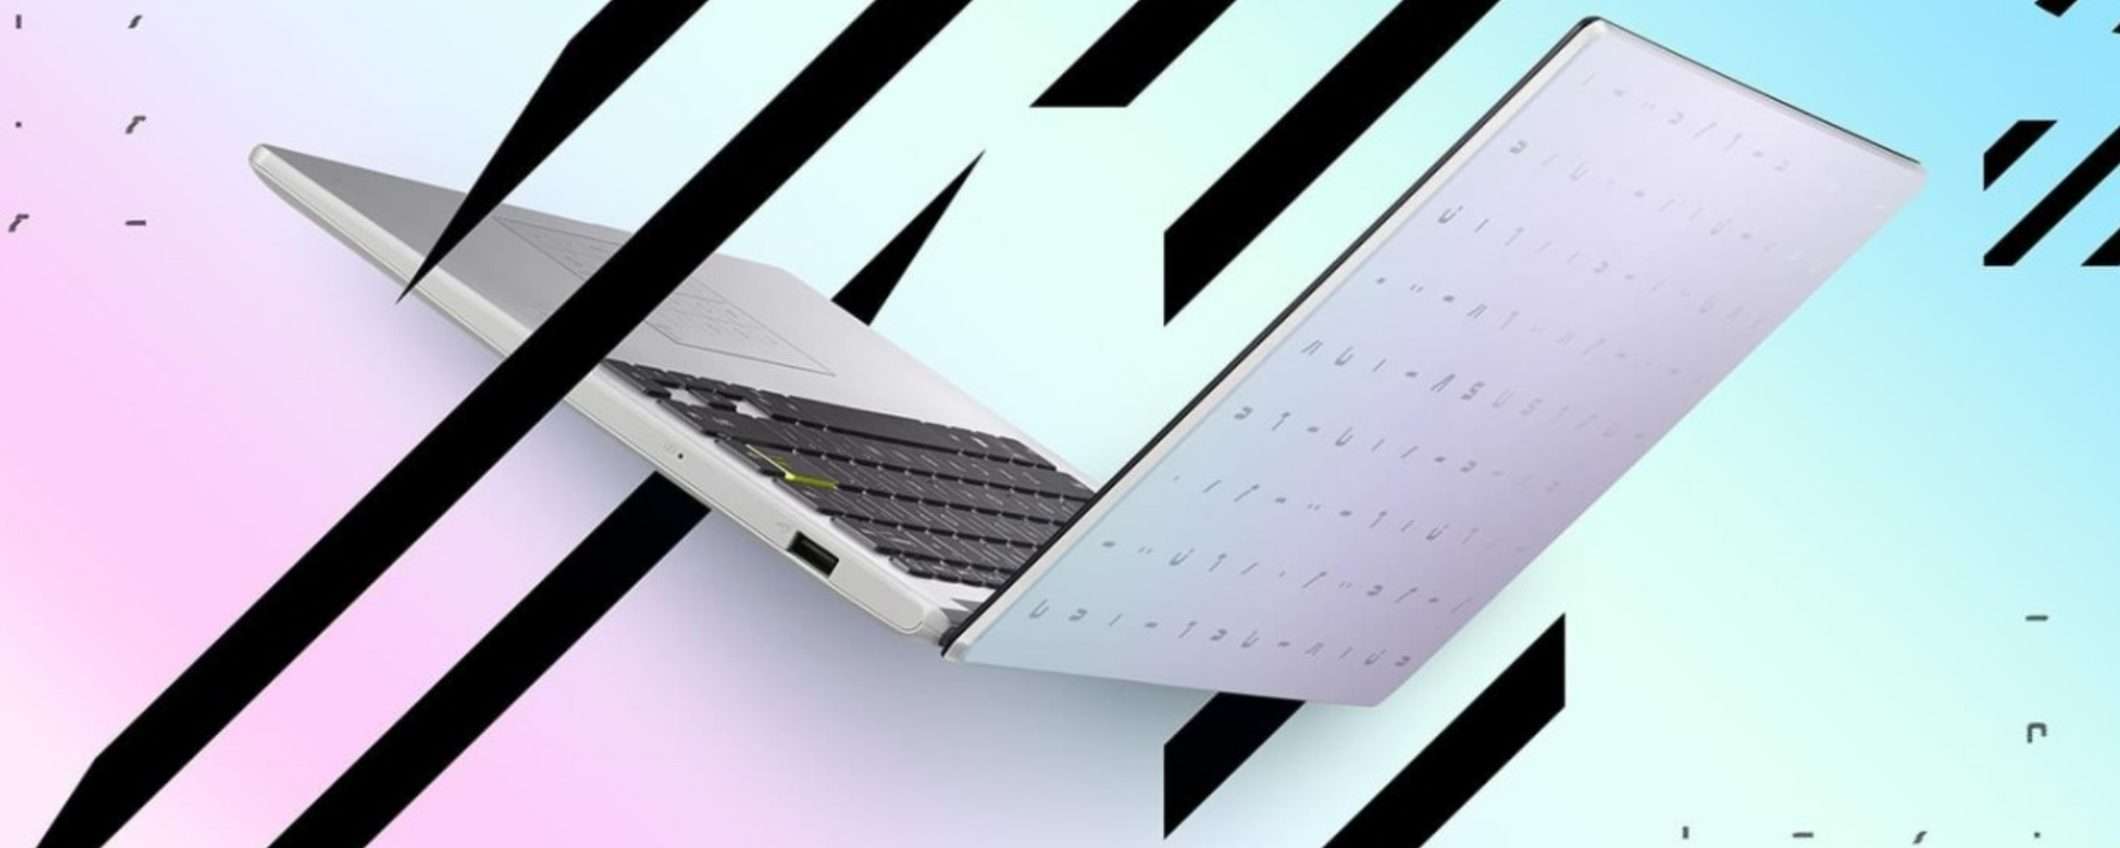 Asus Laptop E410: il portatile per professionisti e studenti a soli 280 euro